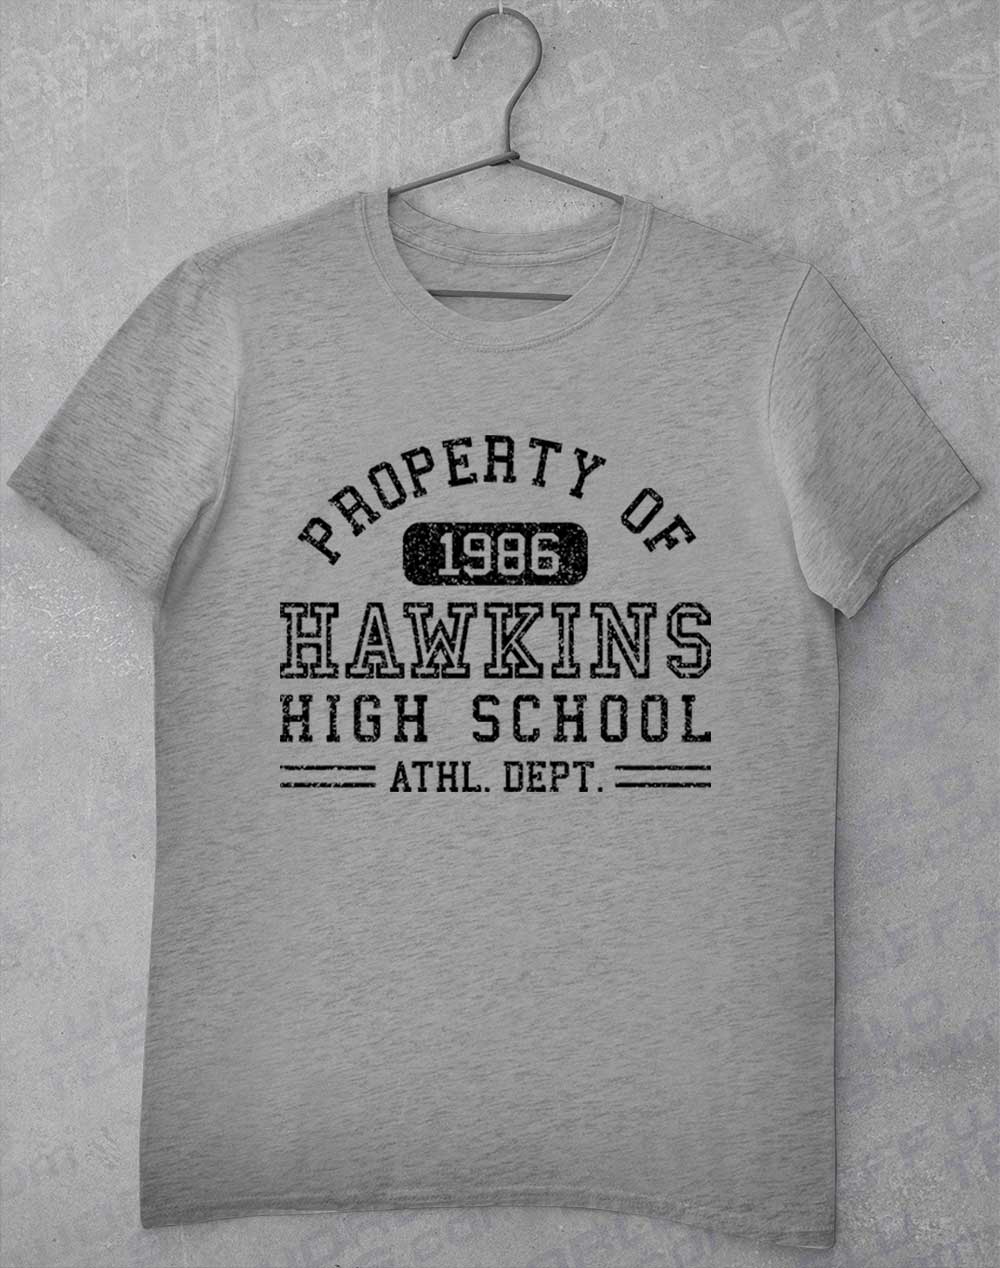 Sport Grey - Hawkins High School Athletics 1986 T-Shirt